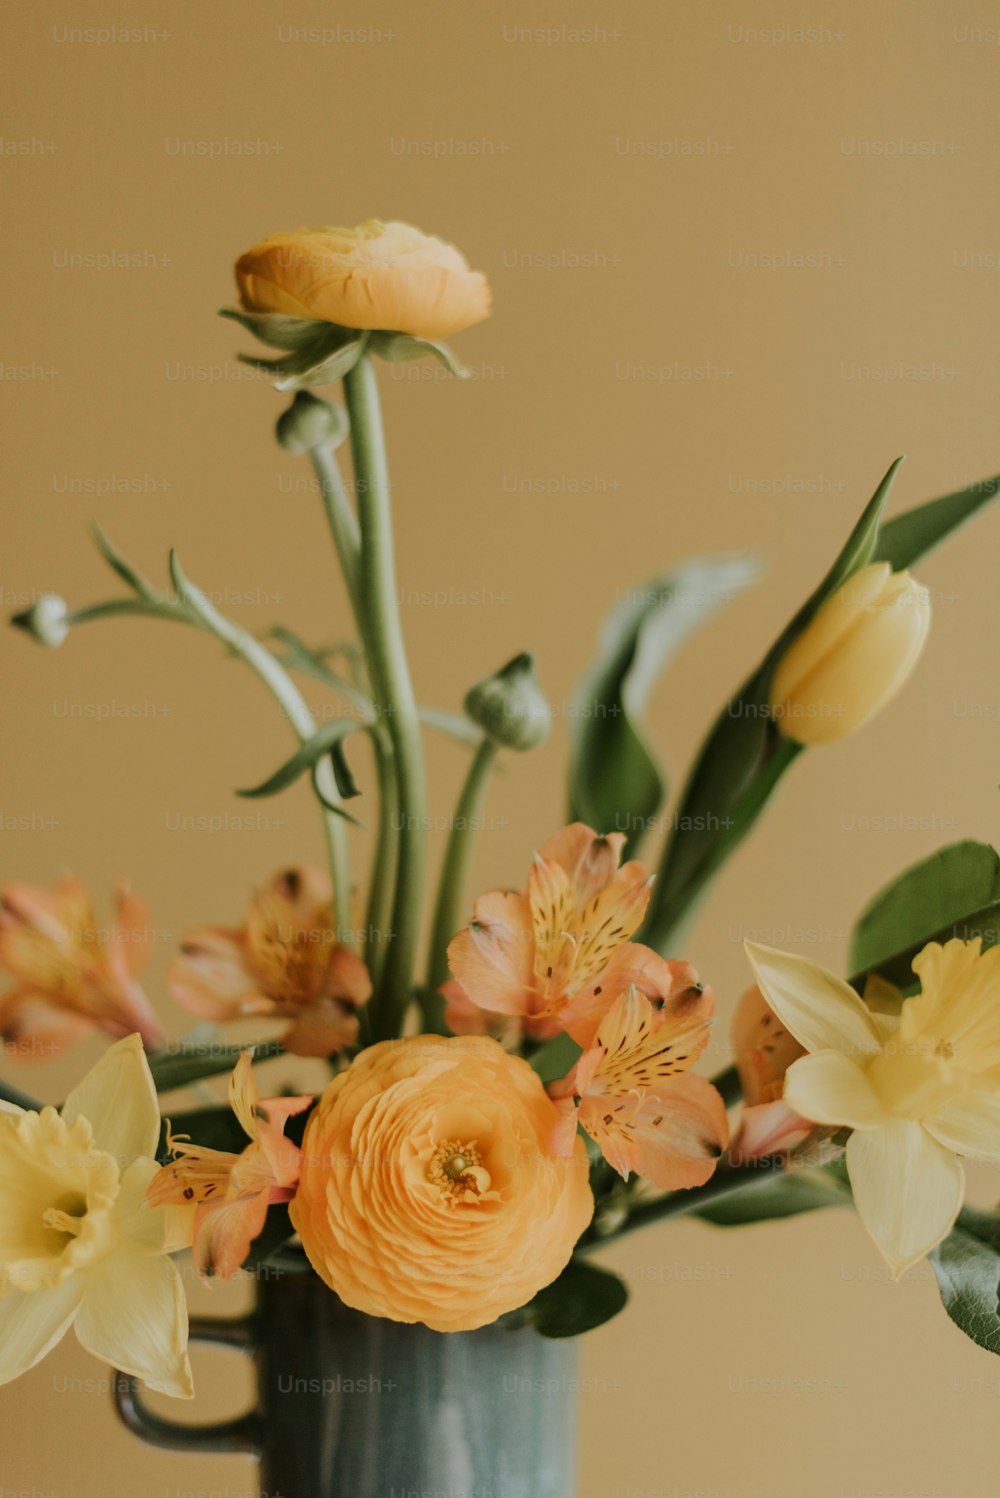 黄色とオレンジ色の花でいっぱいの花瓶